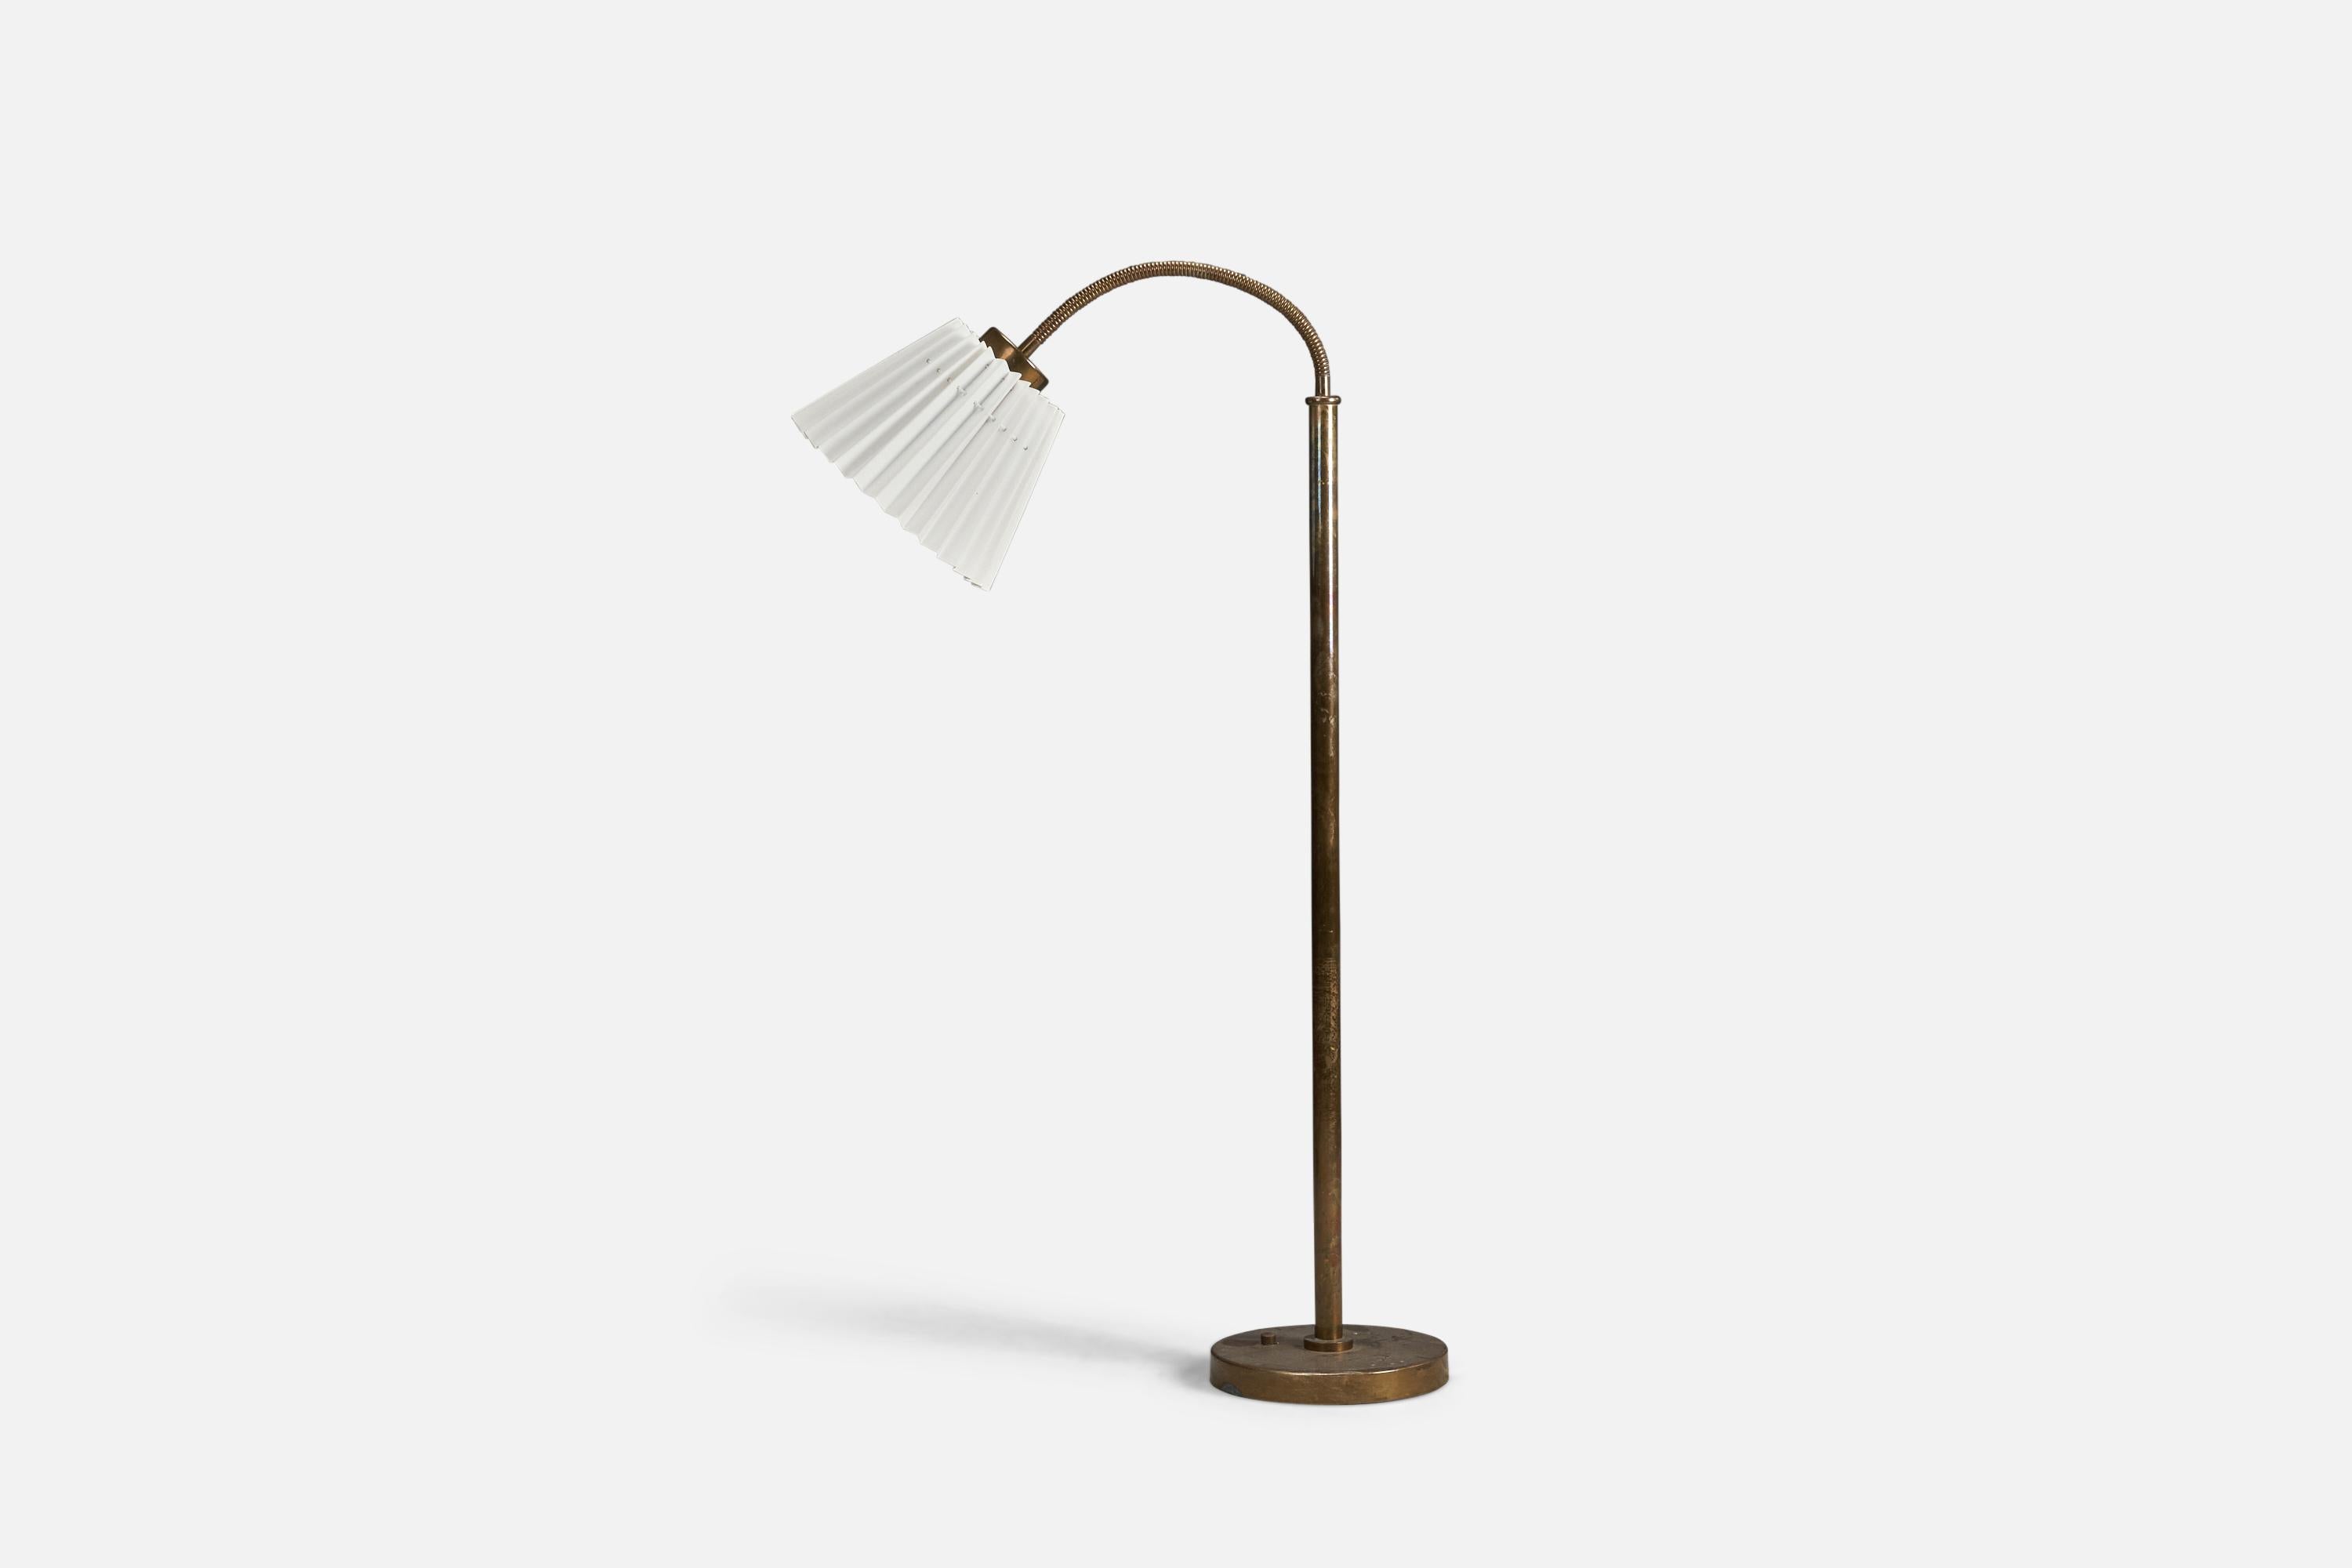 Stehlampe aus Messing und Papier, entworfen von Josef Frank und hergestellt von Svenskt Tenn, Schweden, 1940er Jahre.

Fassung für Standard-Glühbirne E-26 mit mittlerem Sockel.

Auf der Leuchte ist keine maximale Wattzahl angegeben.
